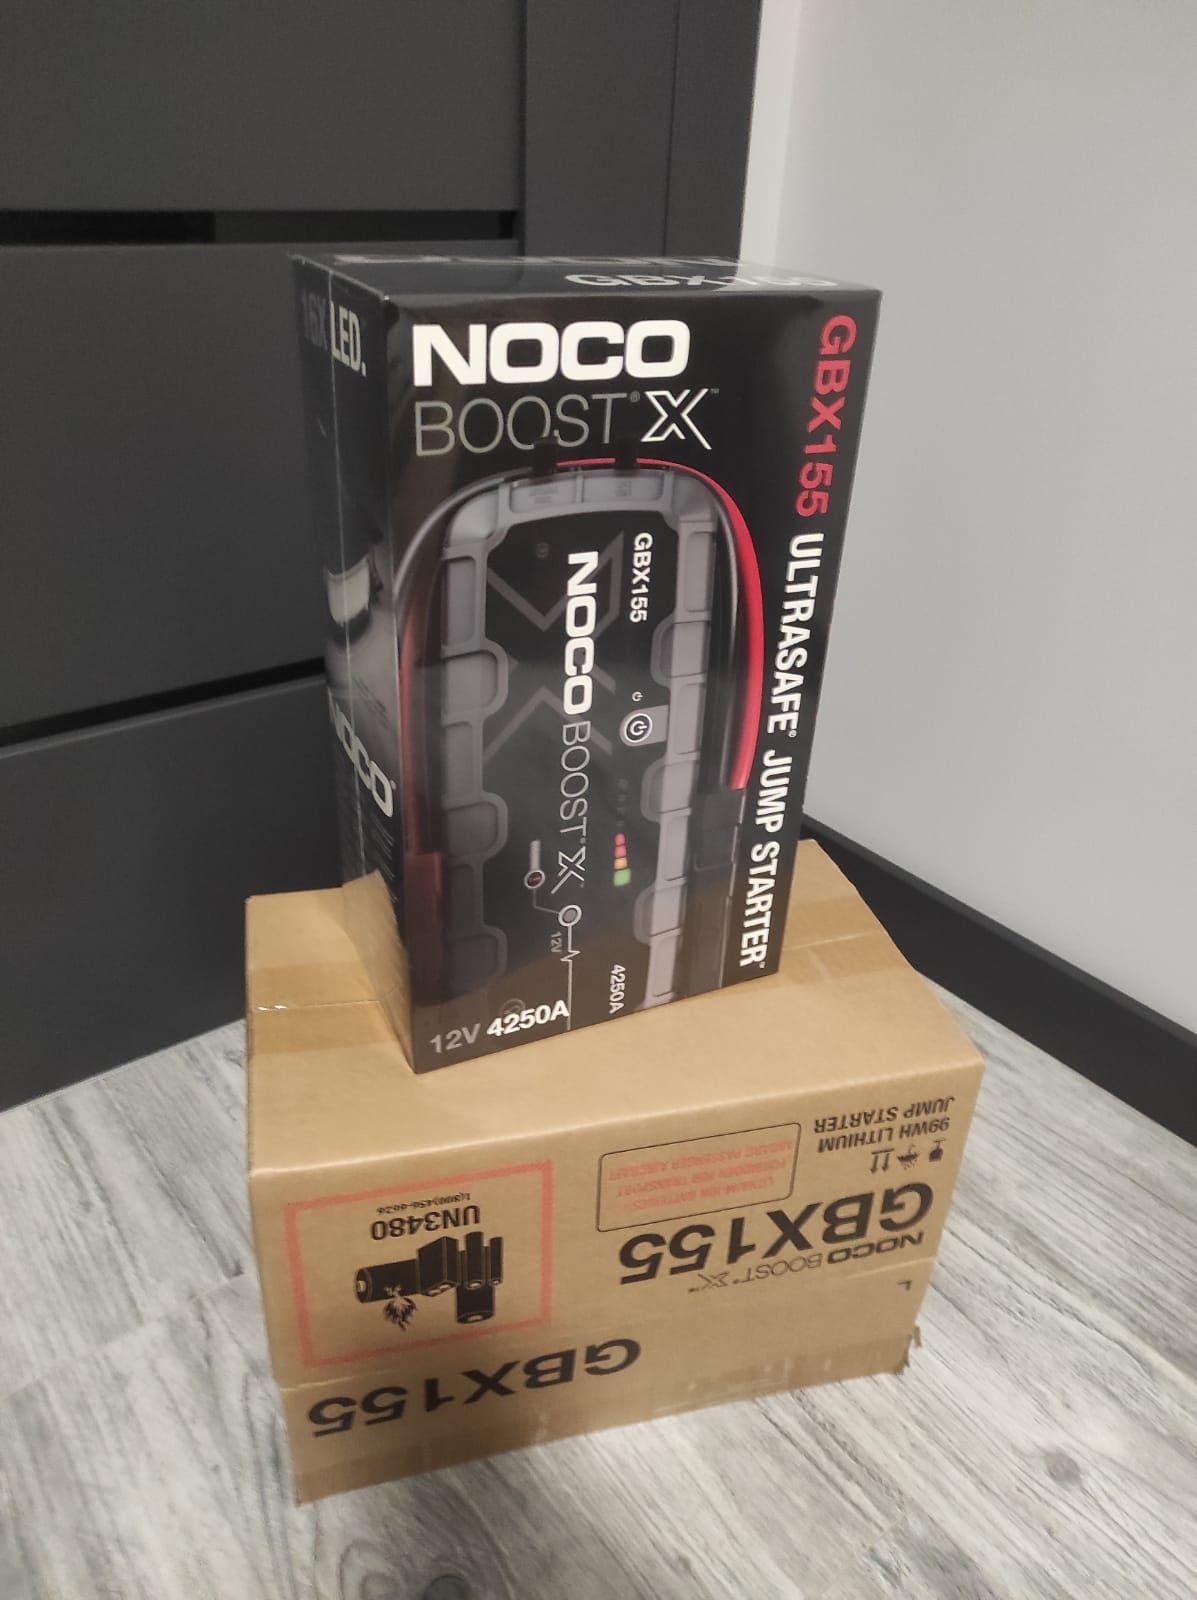 NOCO Boost GBX155